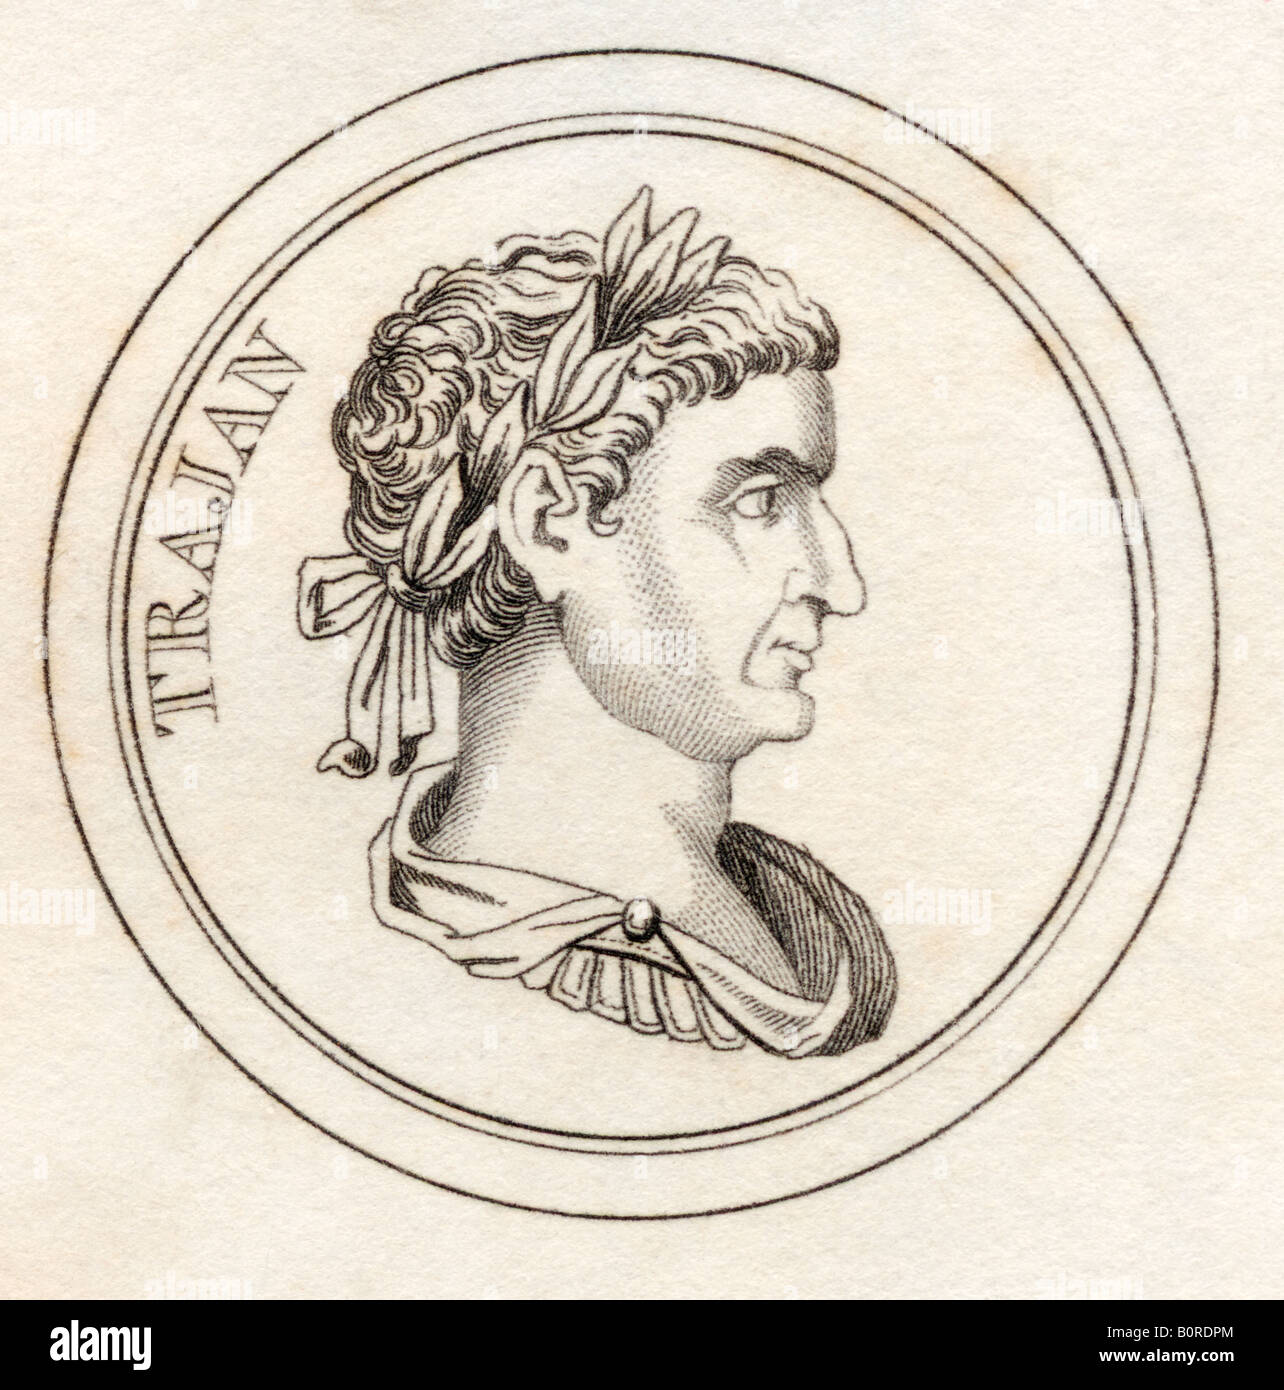 Trajan, Marcus Ulpius Nerva Traianus, AD53 - 117. Empereur romain. Tiré du livre Crabbs Historical Dictionary, publié en 1825. Banque D'Images